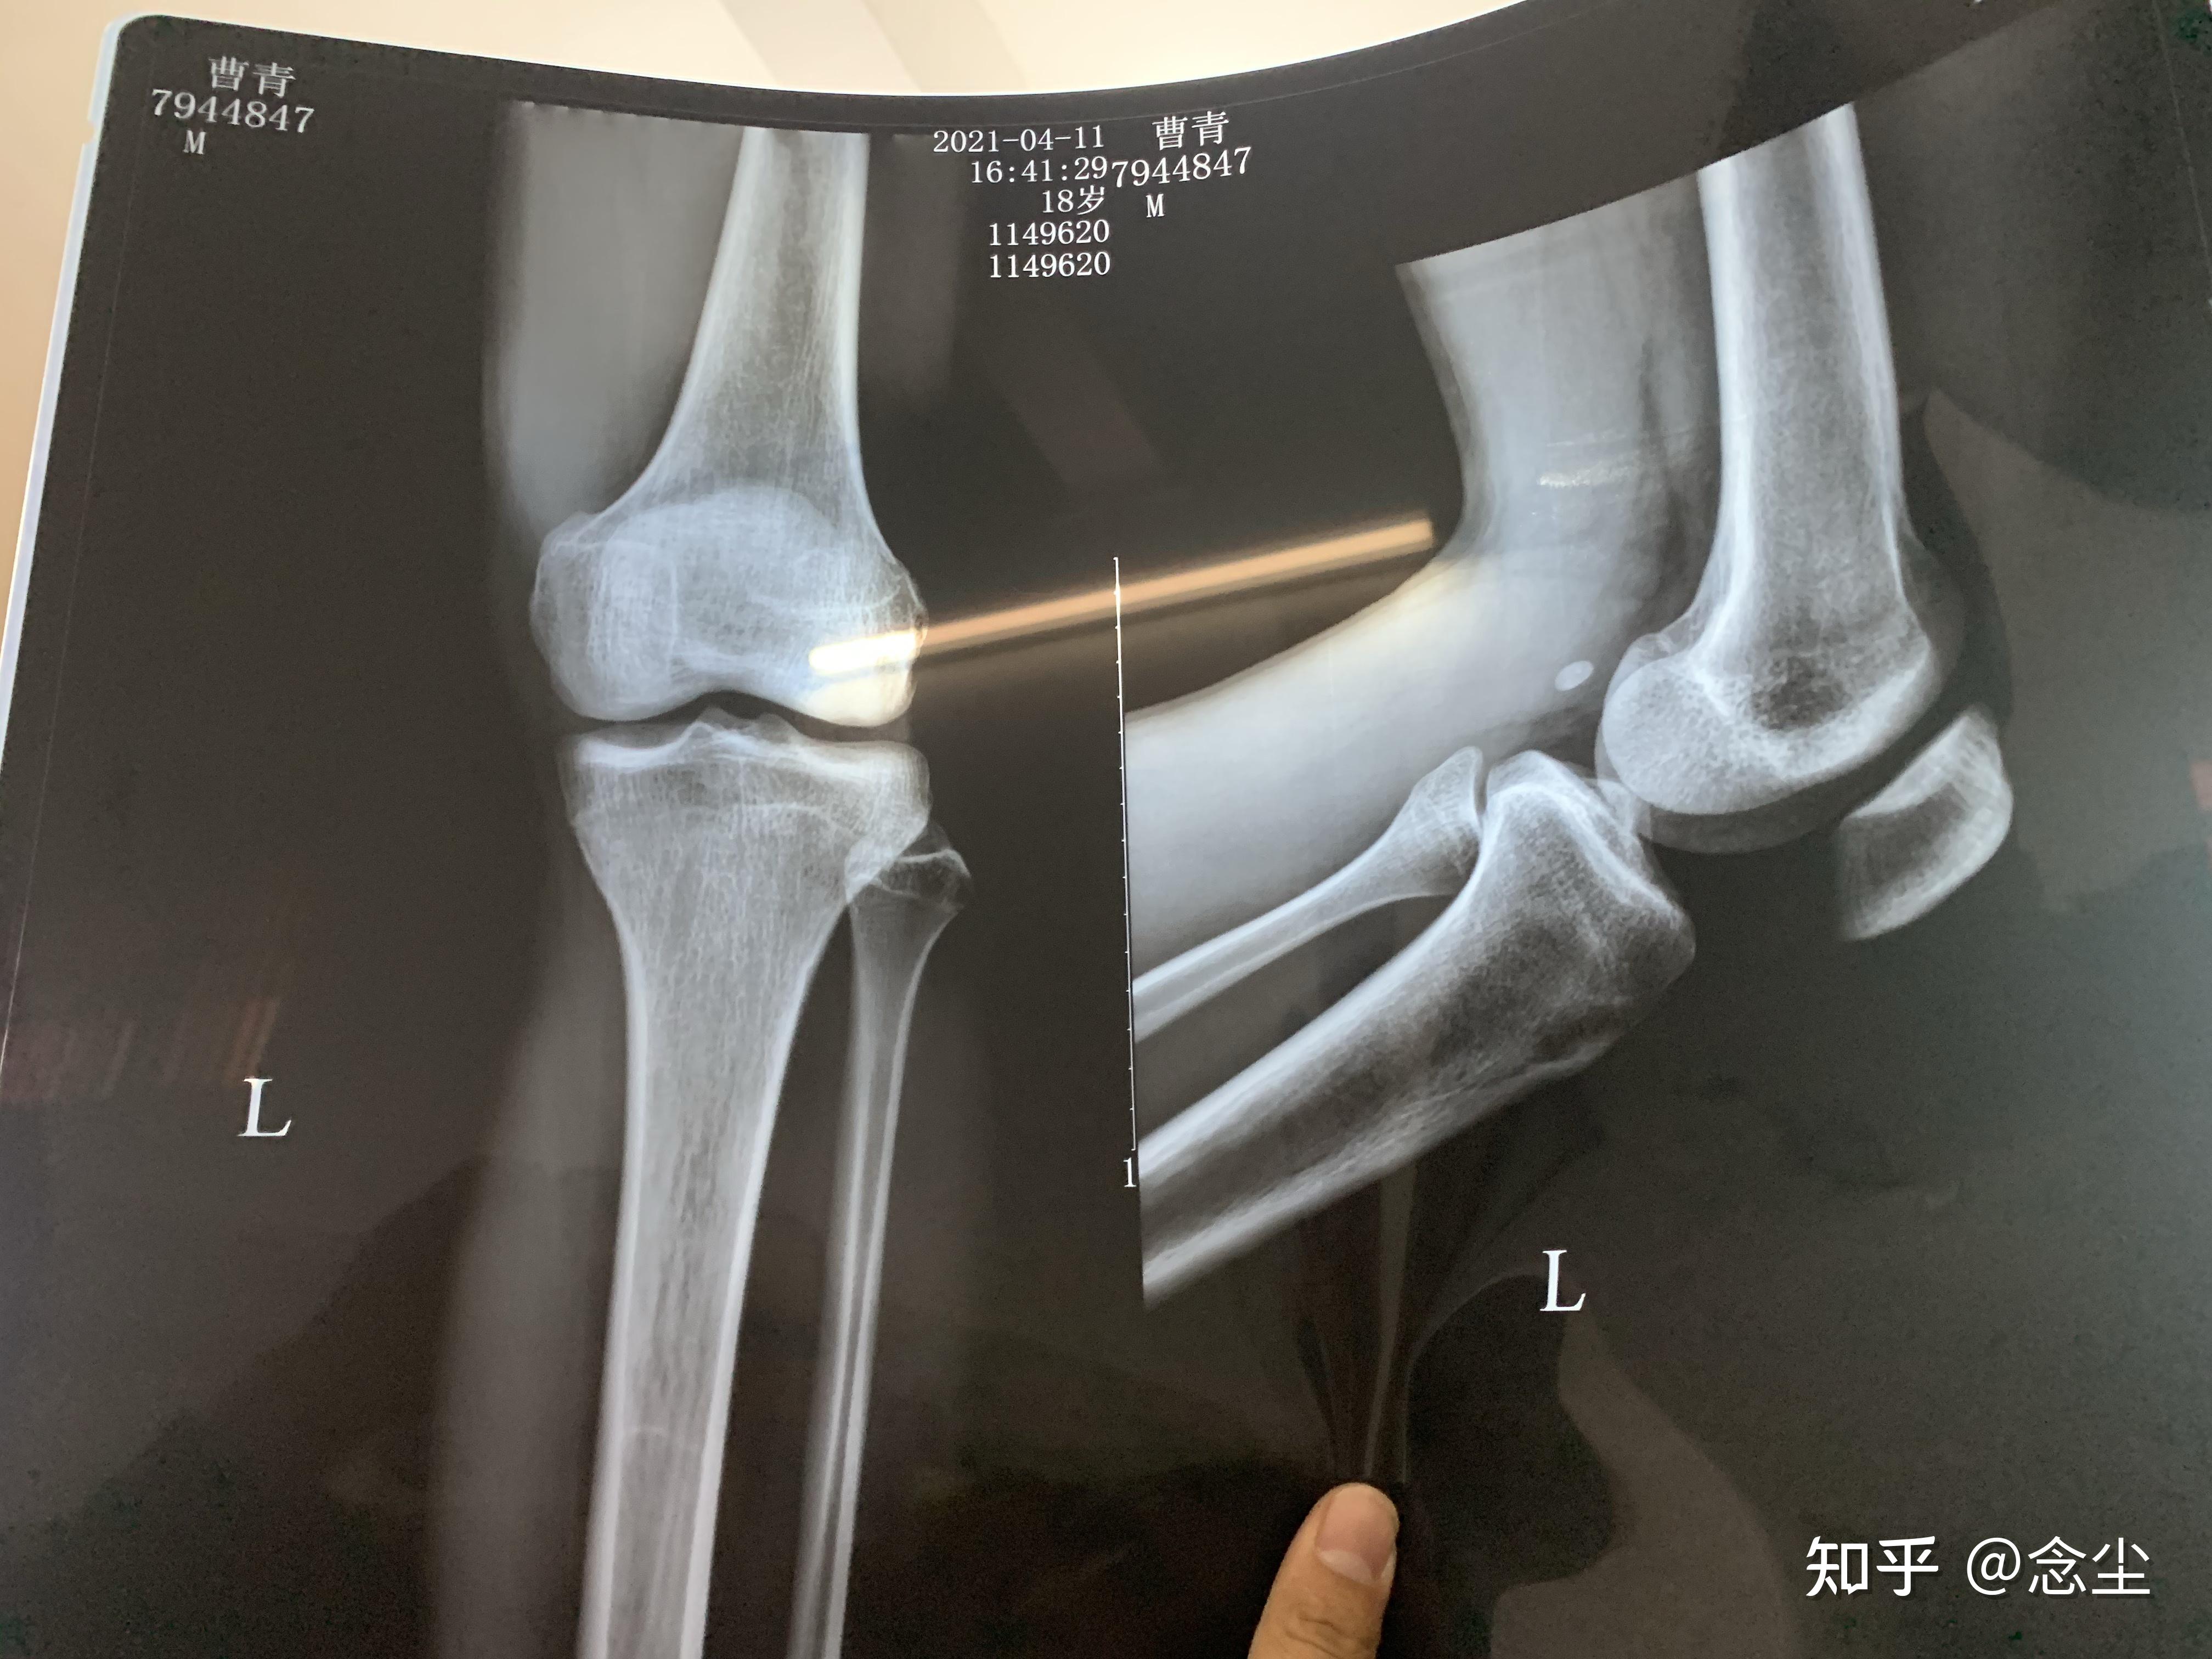 儿童膝关节骨骺图片图片